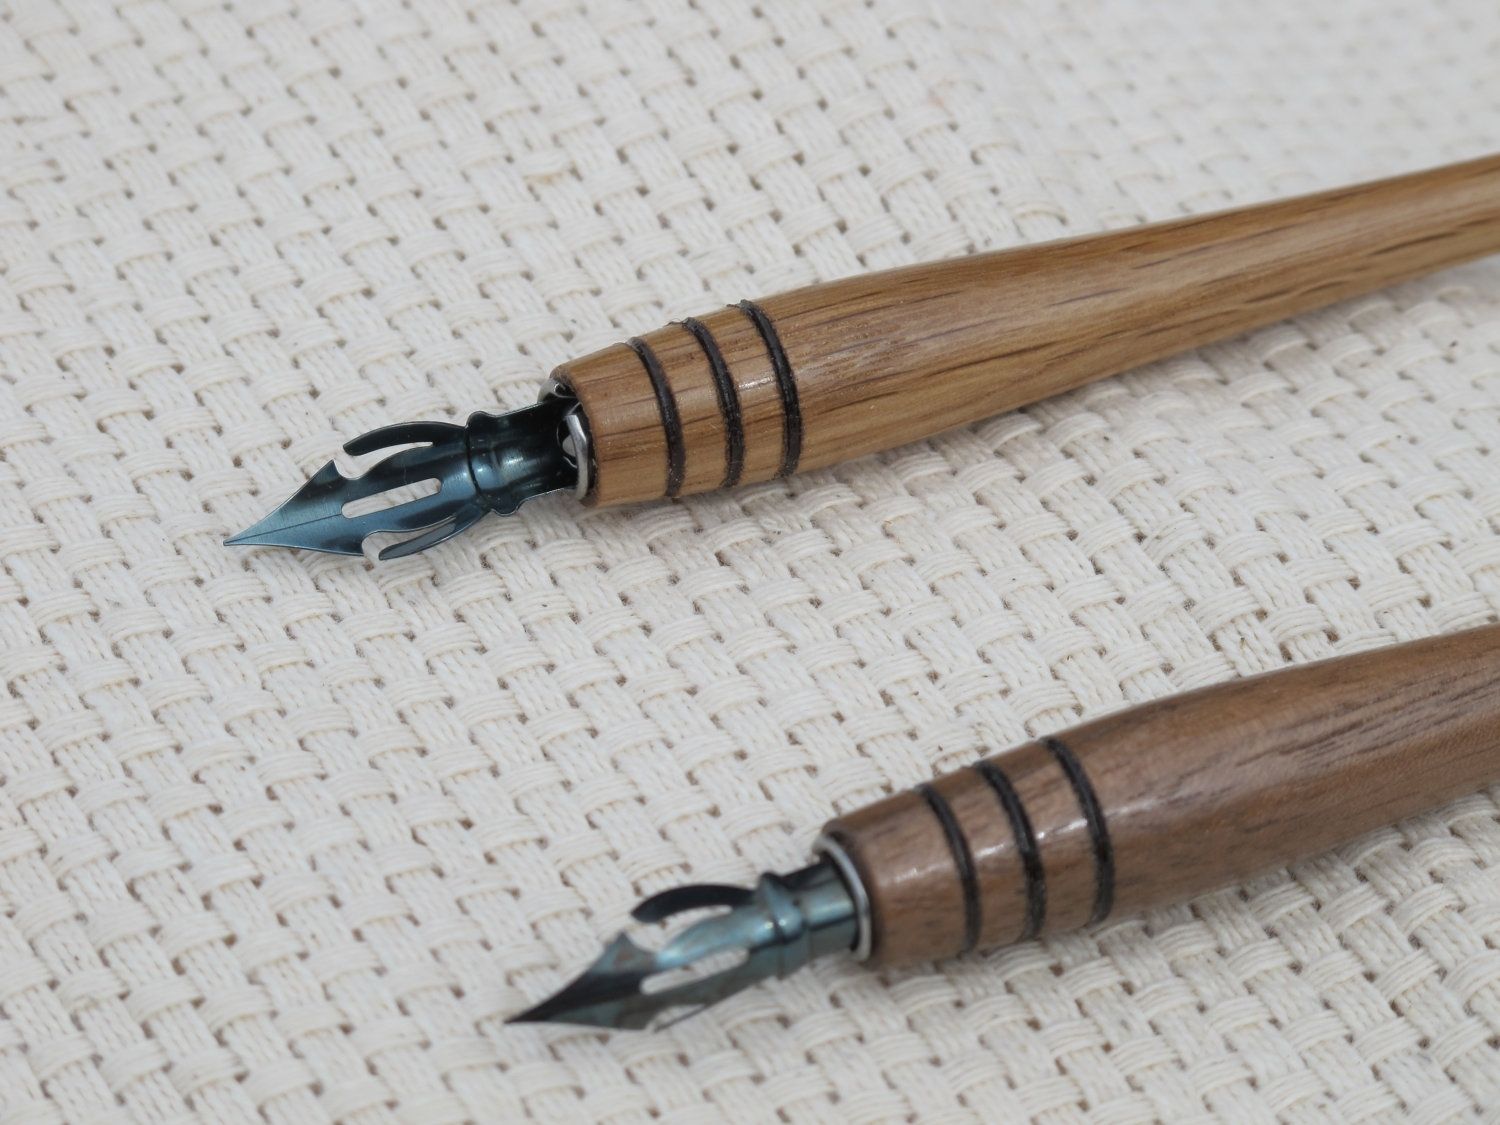 Custom Pens, USA Made